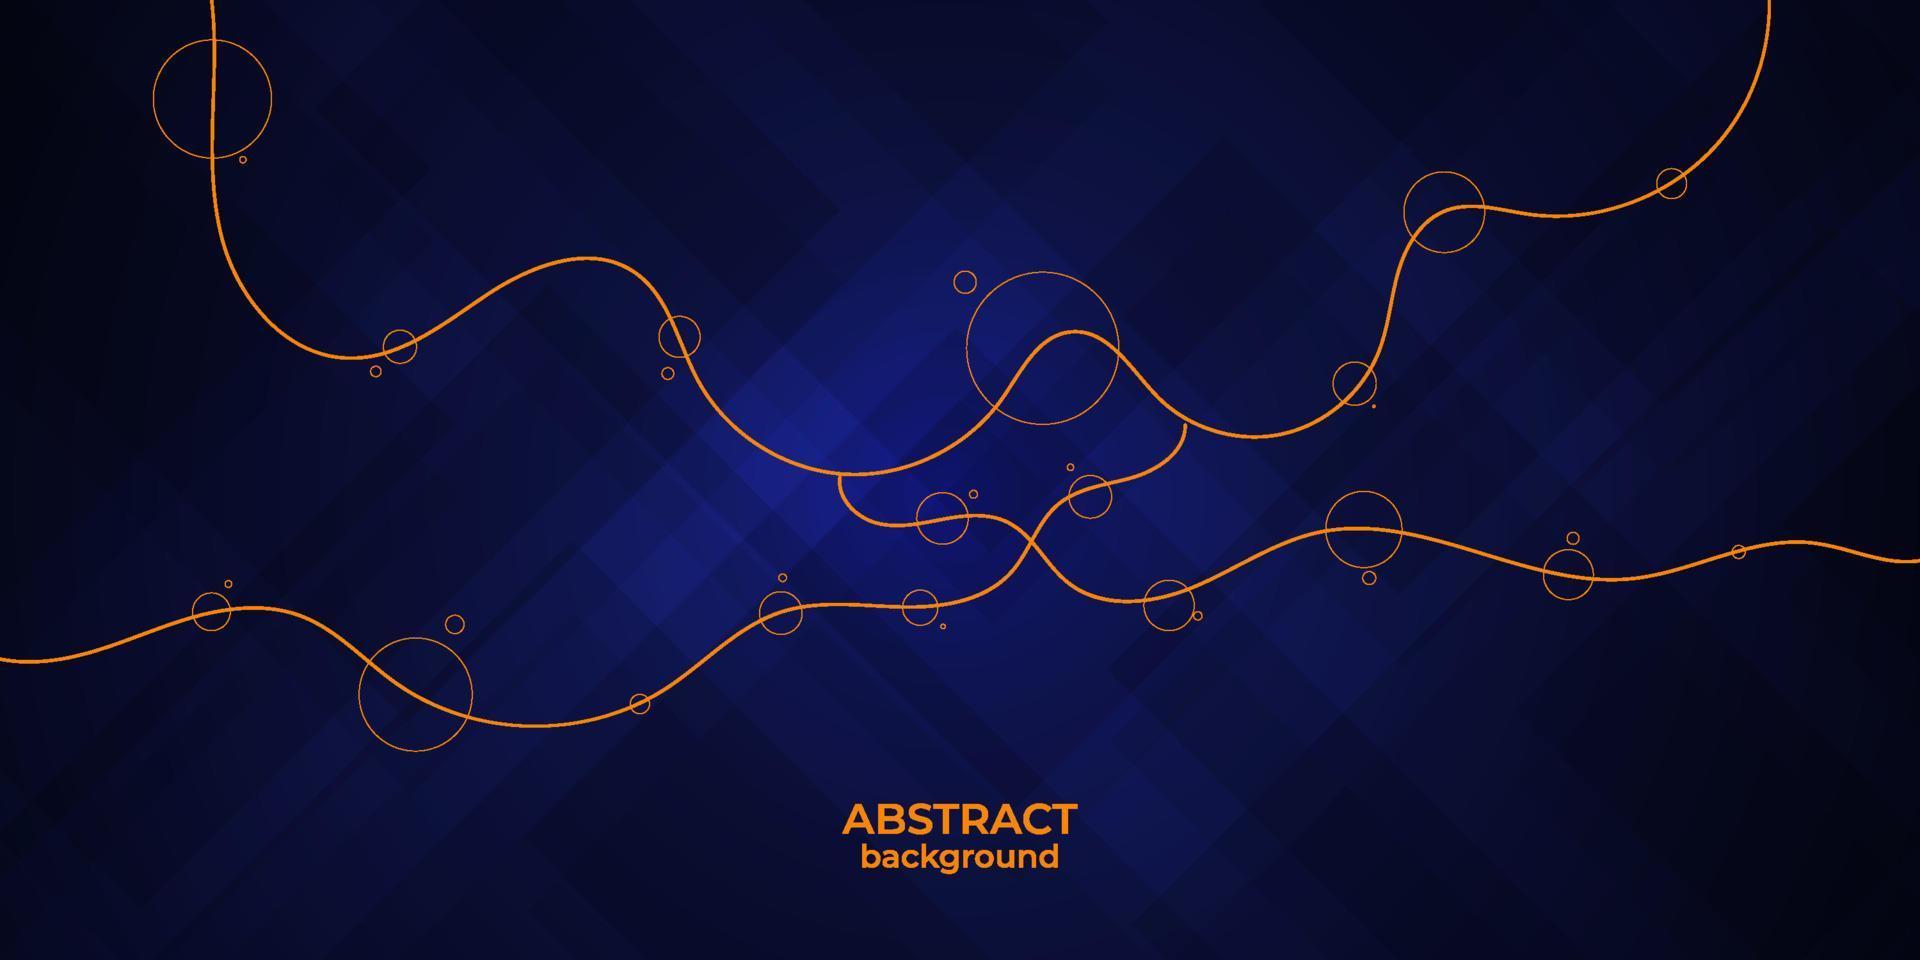 sfondo di linee arancioni ondulate. modello di pagina di destinazione astratta.stile di colore blu scuro. vettore eps10